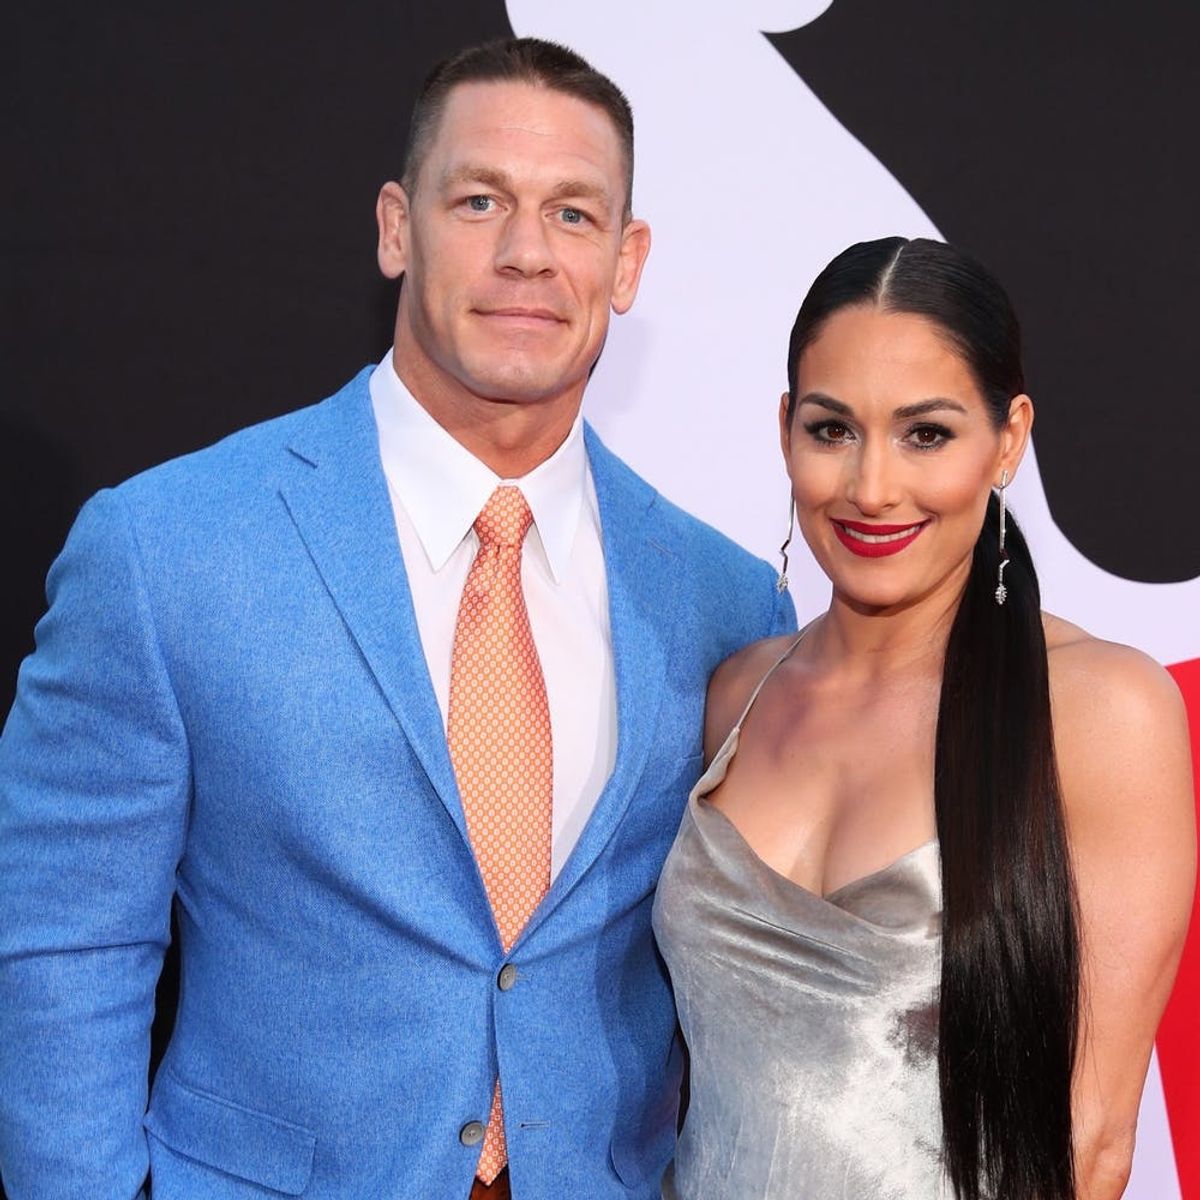 John Cena, Nikki Bella Have Split After 6 Years Together